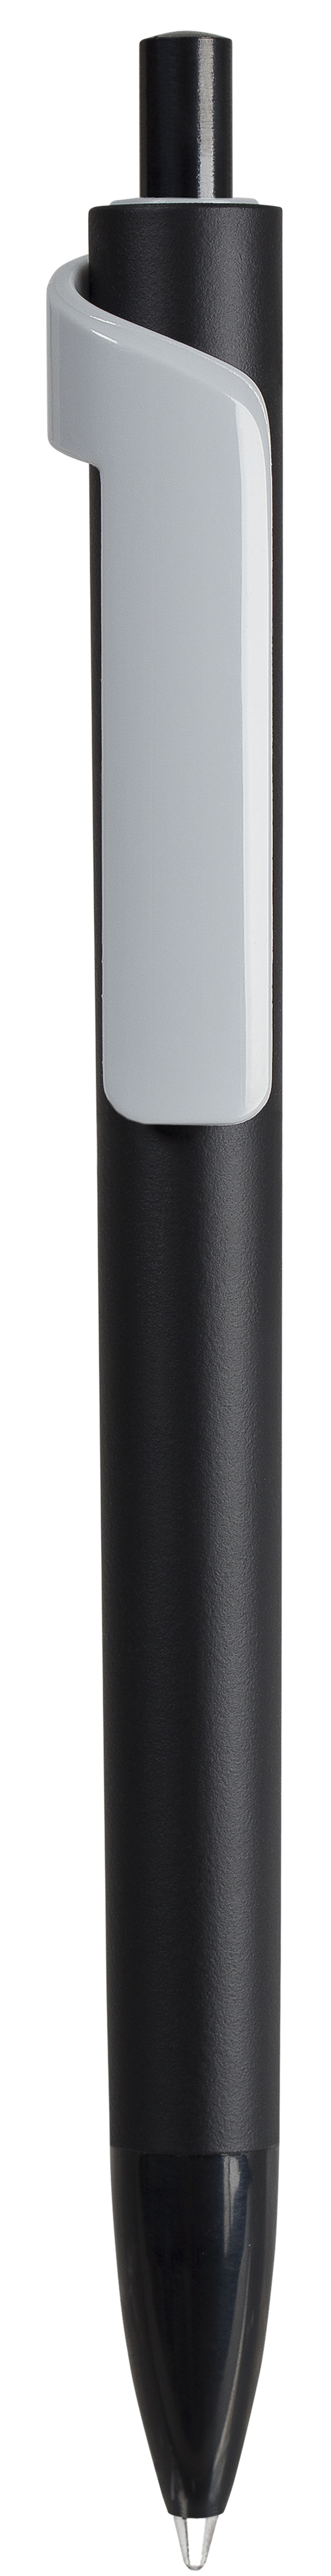 Ручка шариковая FORTE SOFT BLACK, черный/серый, пластик, покрытие soft touch